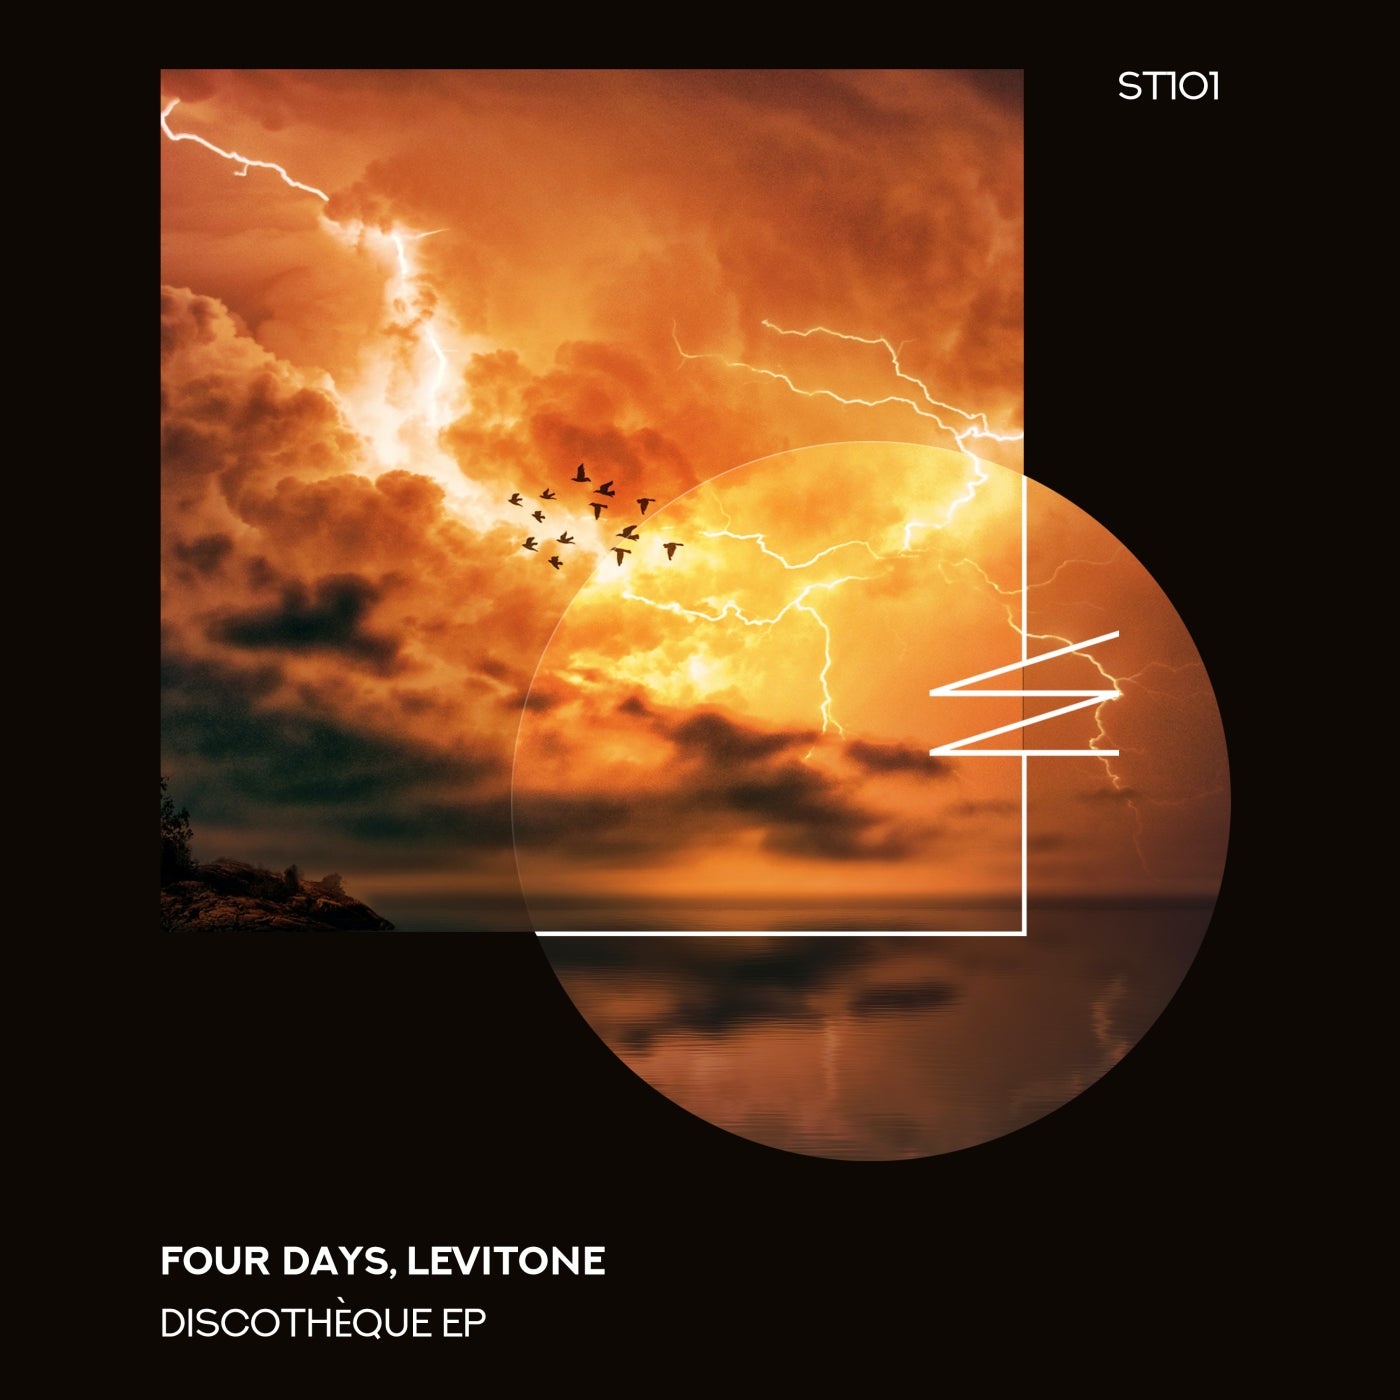 Four Days, Levitone - Discothèque [ST101]